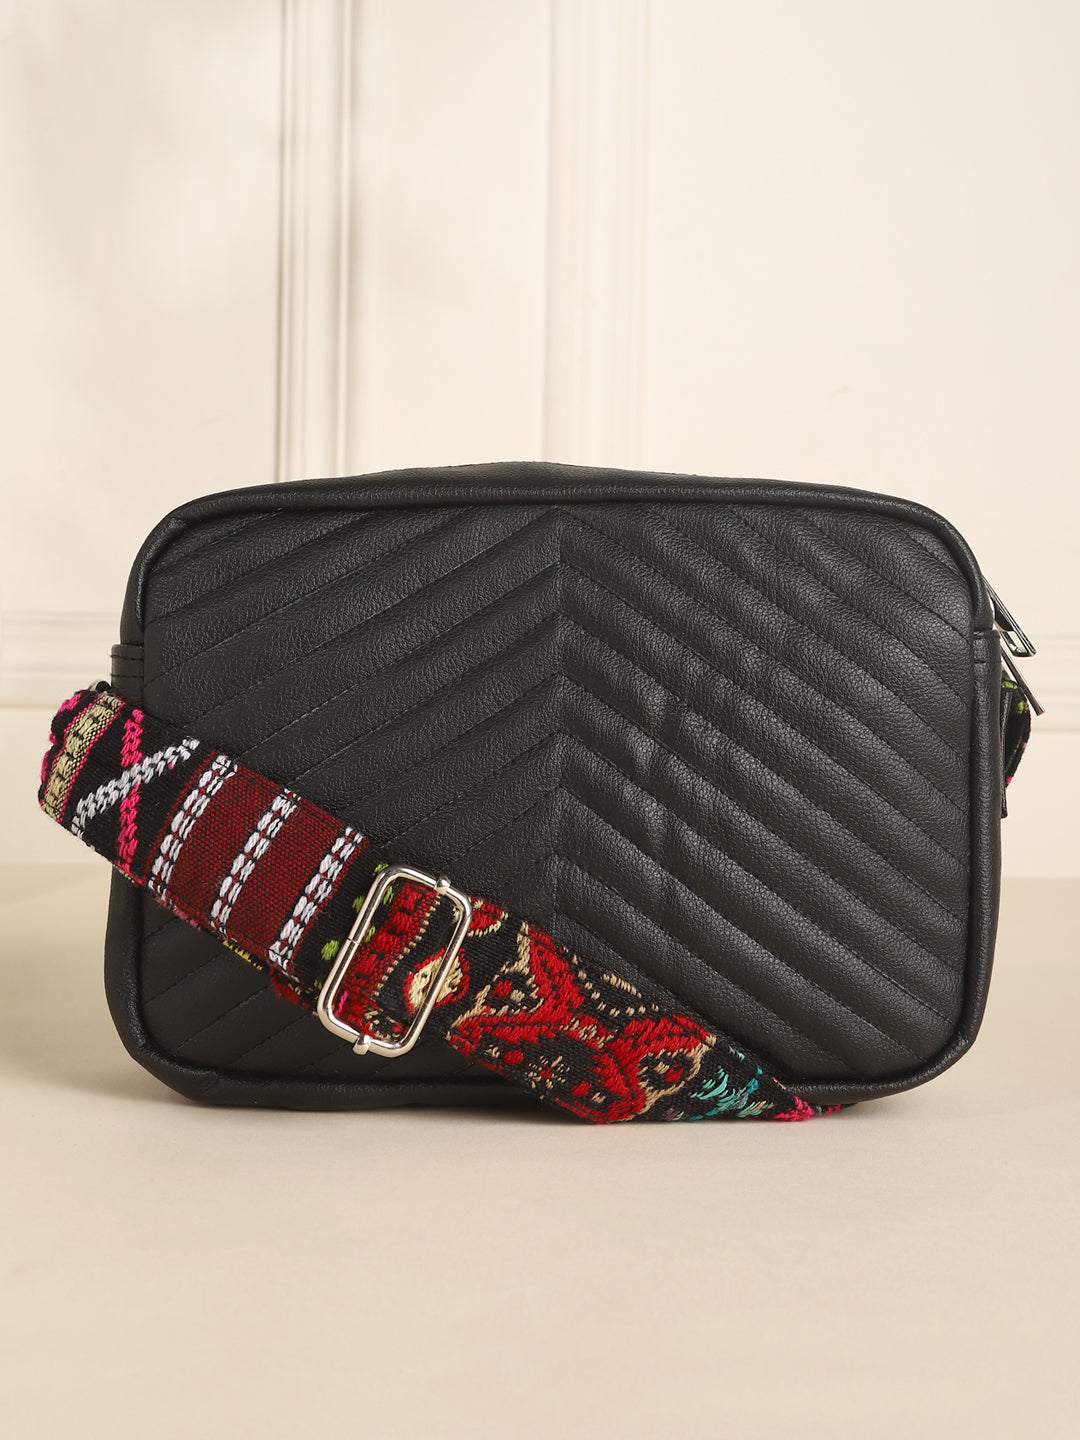 Textured Black Sling Bag with Adjustable Strap